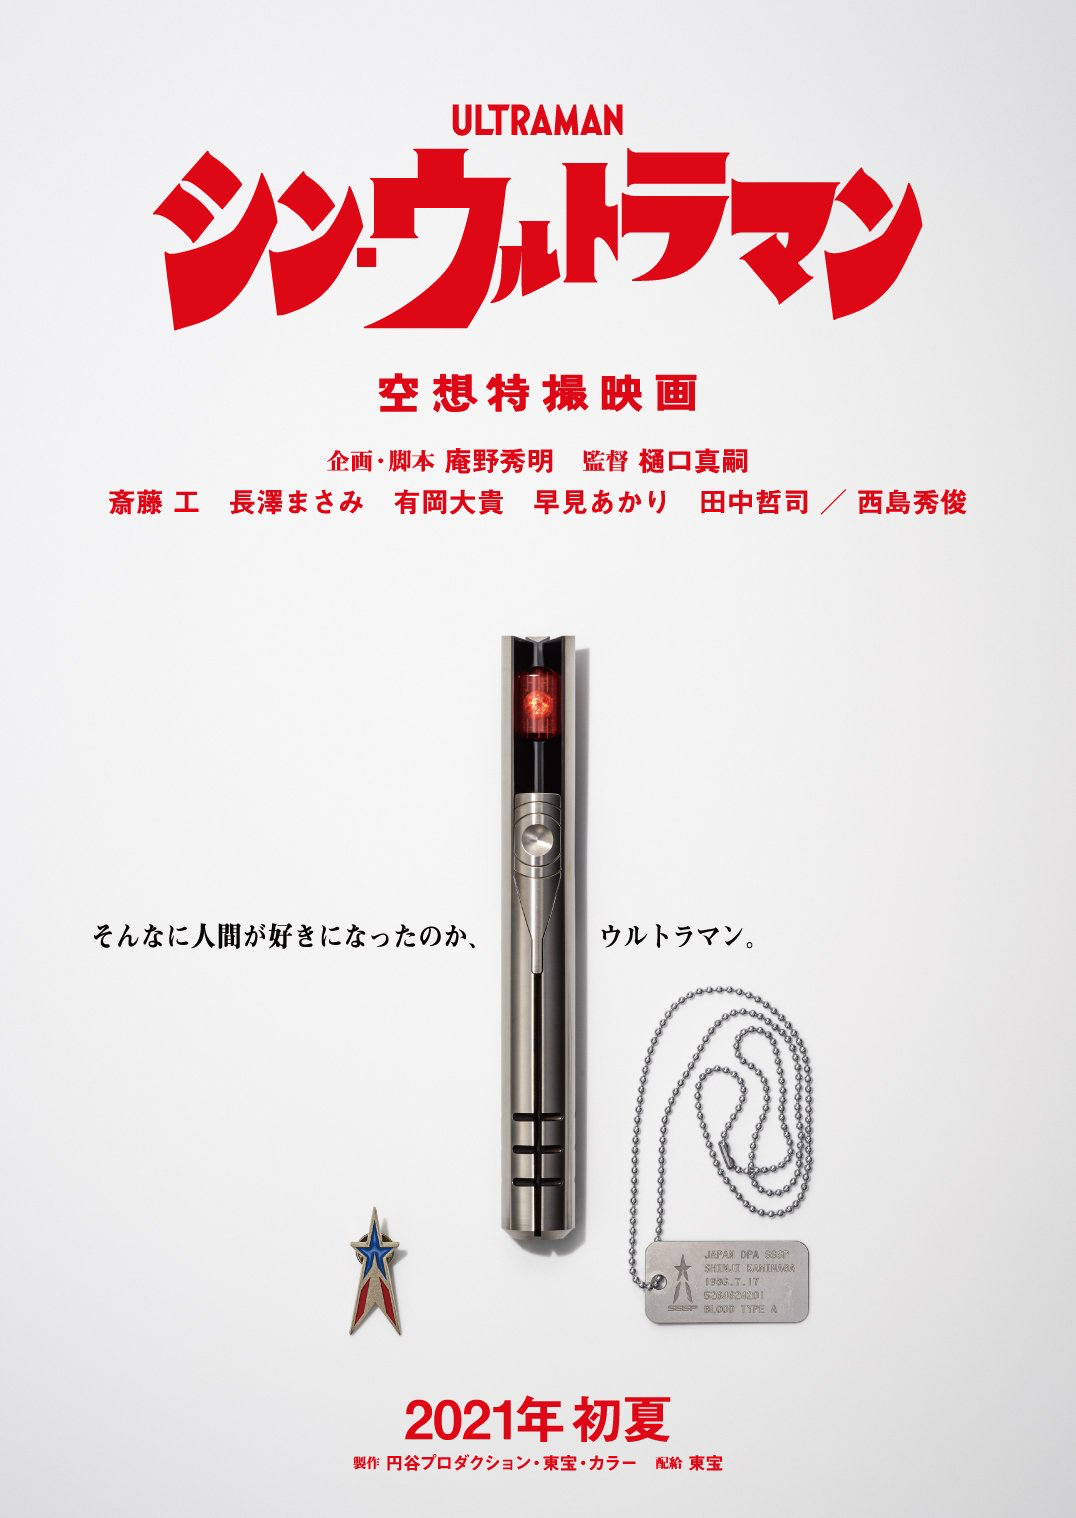 Teaser Trailer Poster Images For Shin Ultraman